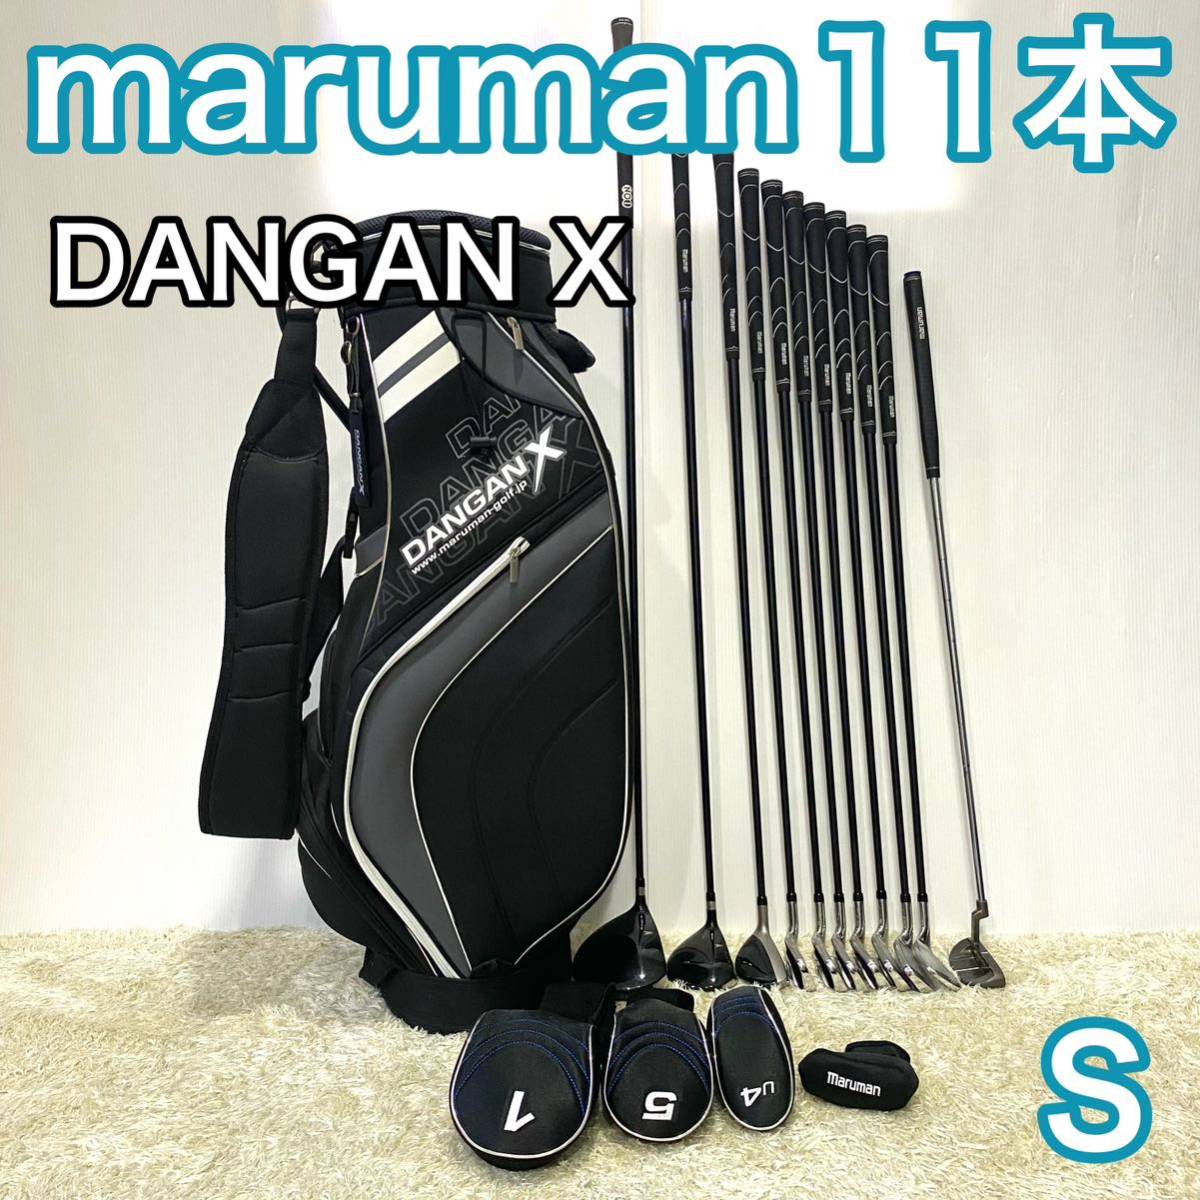 マルマン DANGAN X ゴルフセット 11本 右利き ゴルフクラブ S marumanキャディバッグ フレックスS